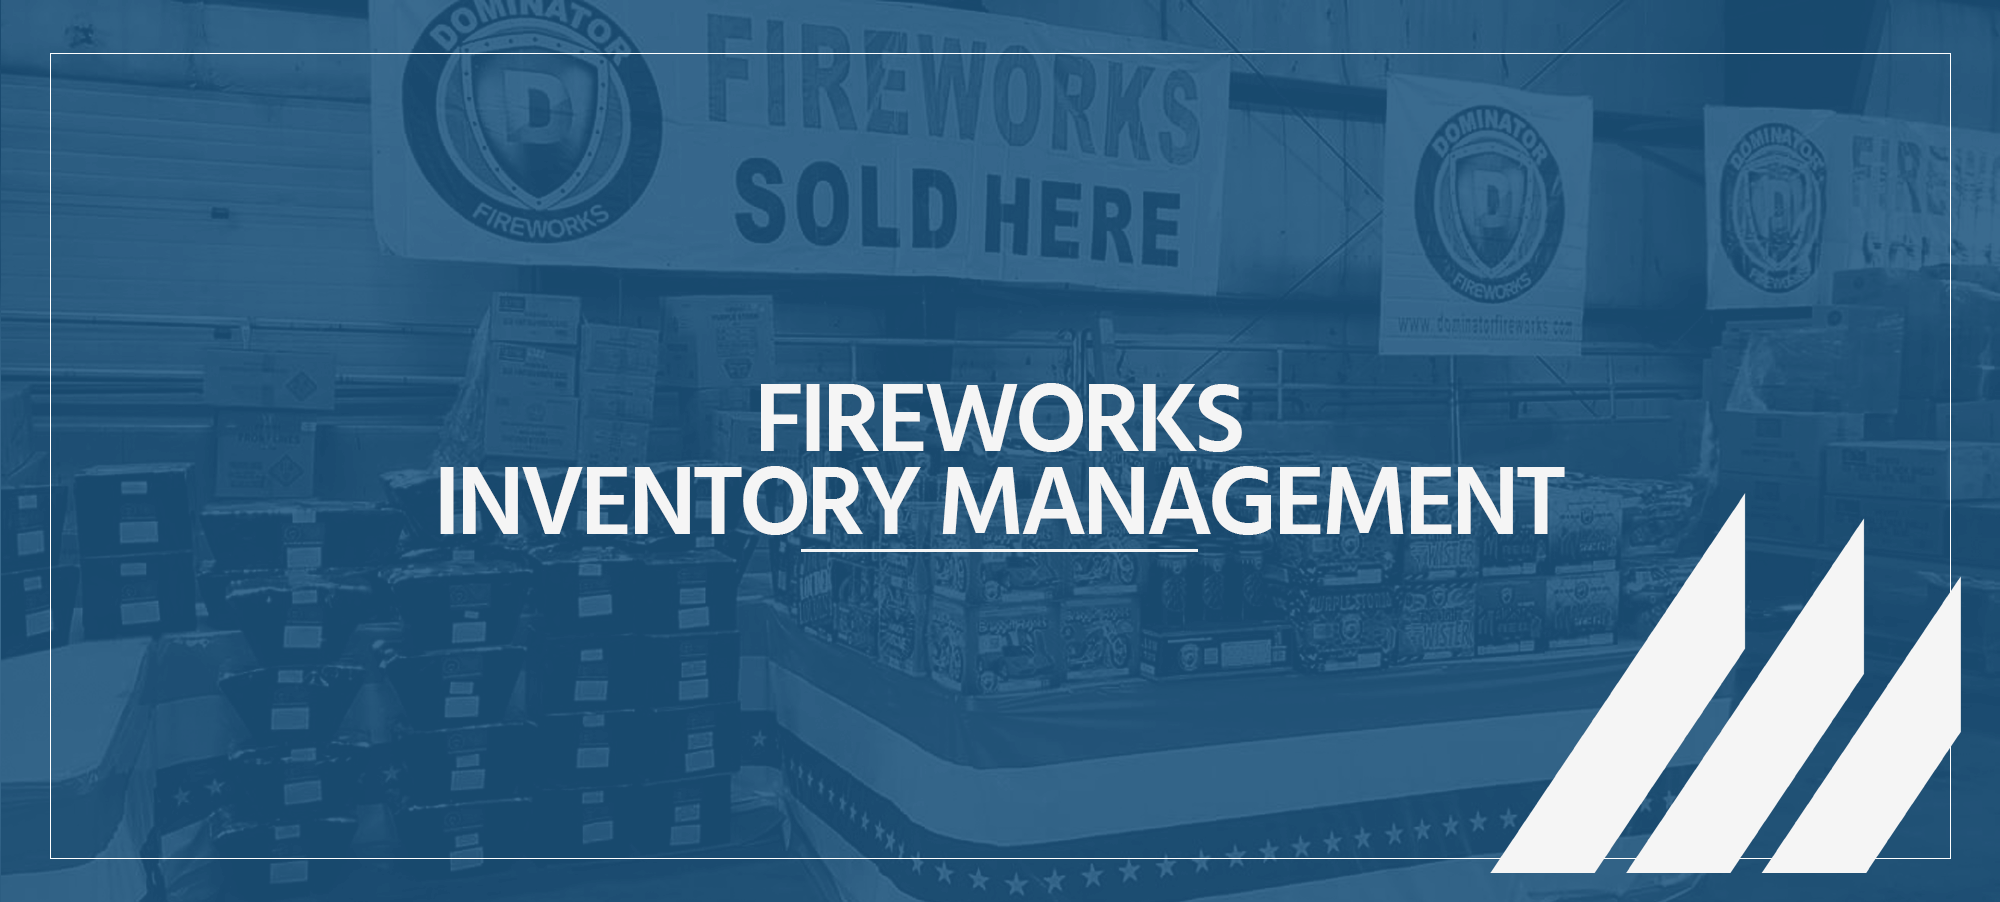 Fireworks inventory management header image